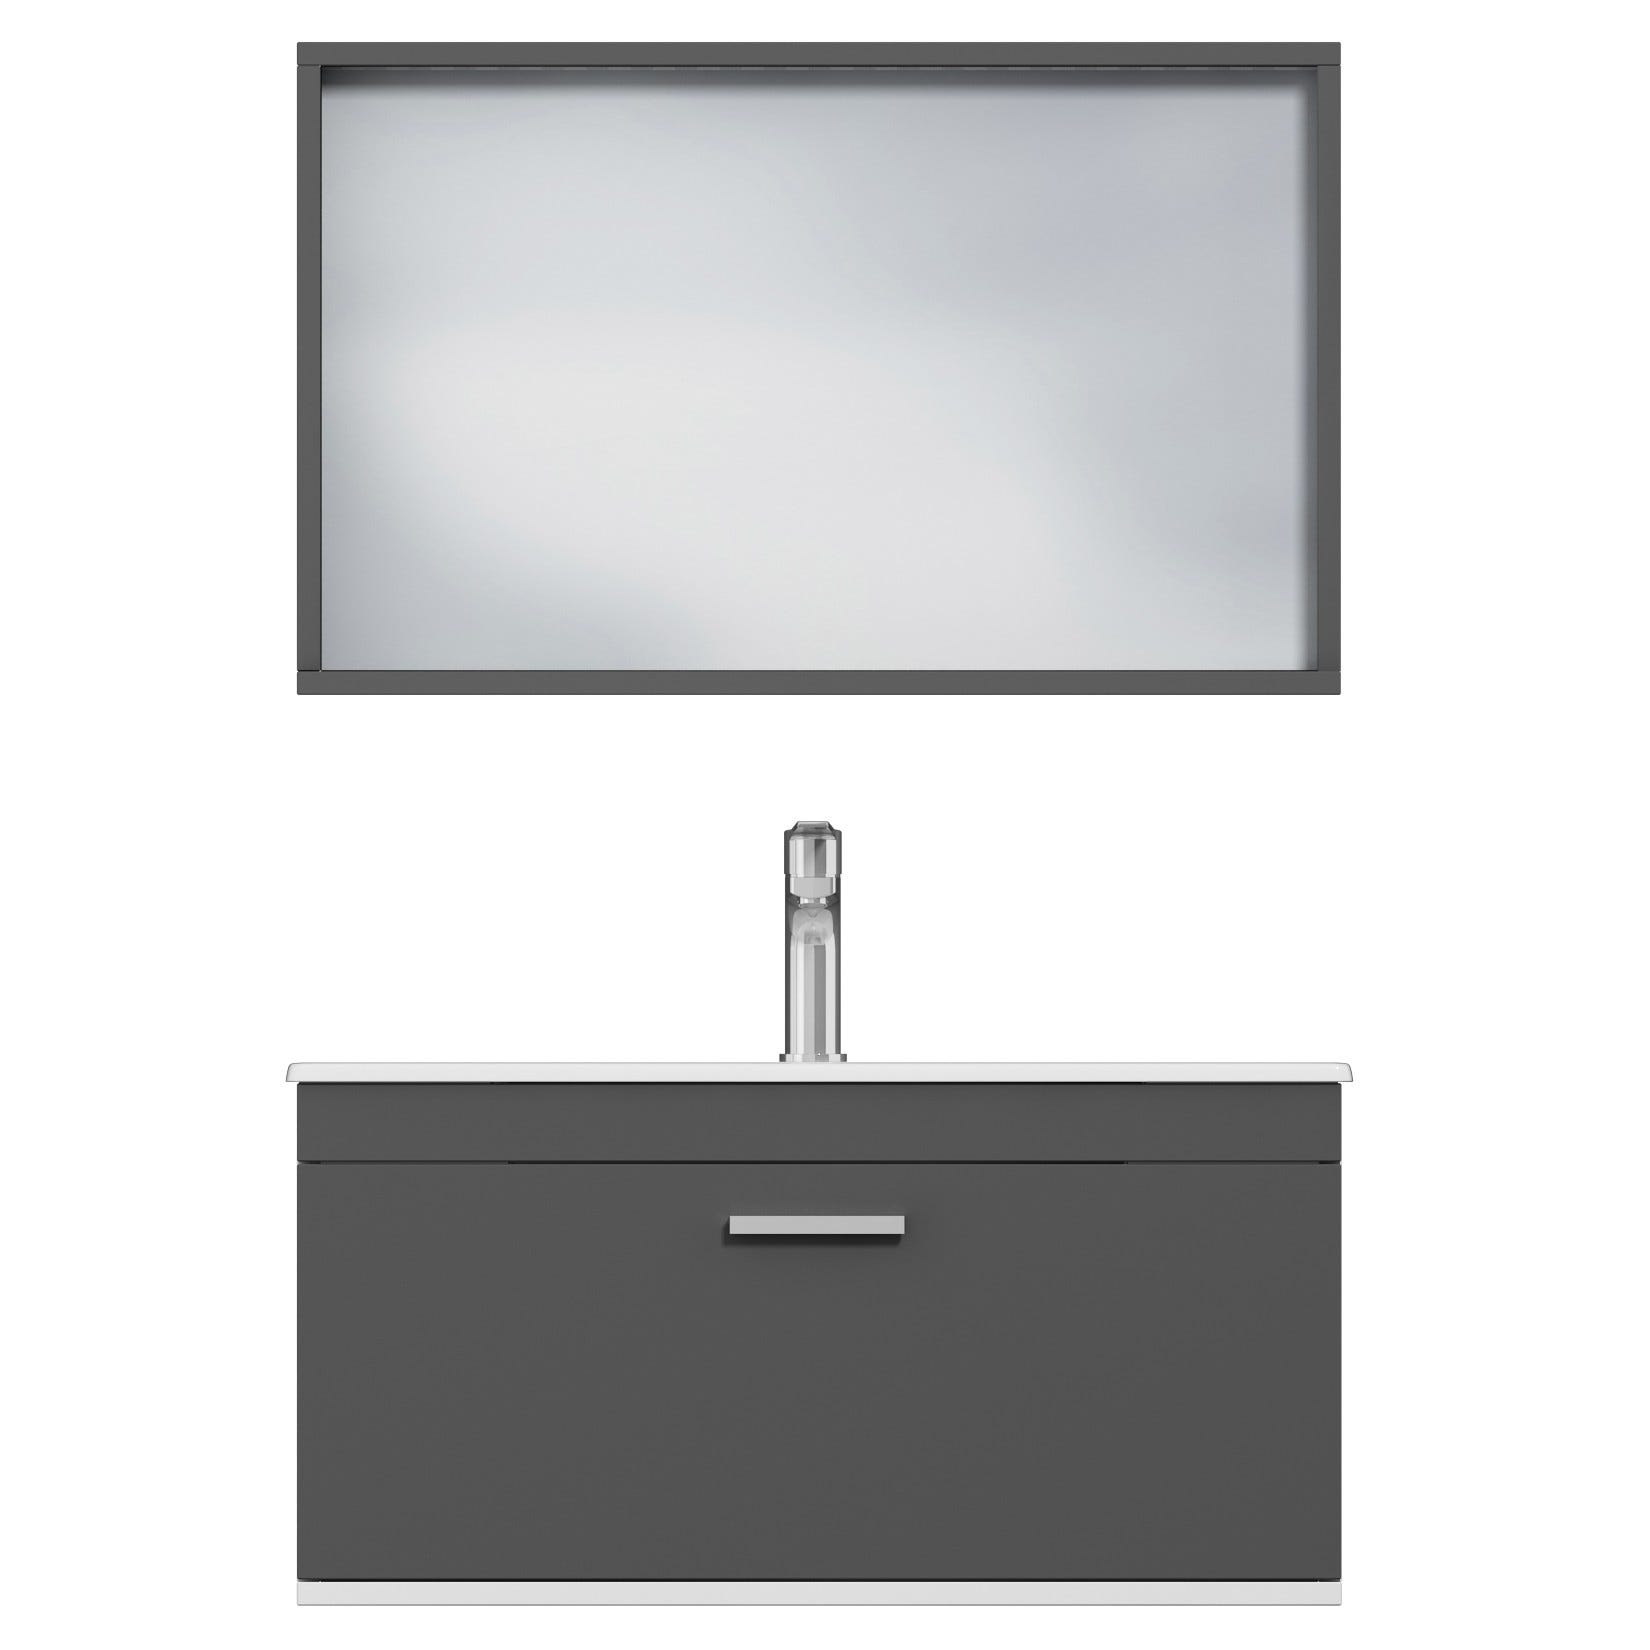 RUBITE Meuble salle de bain simple vasque 1 tiroir gris anthracite largeur 80 cm + miroir cadre 4